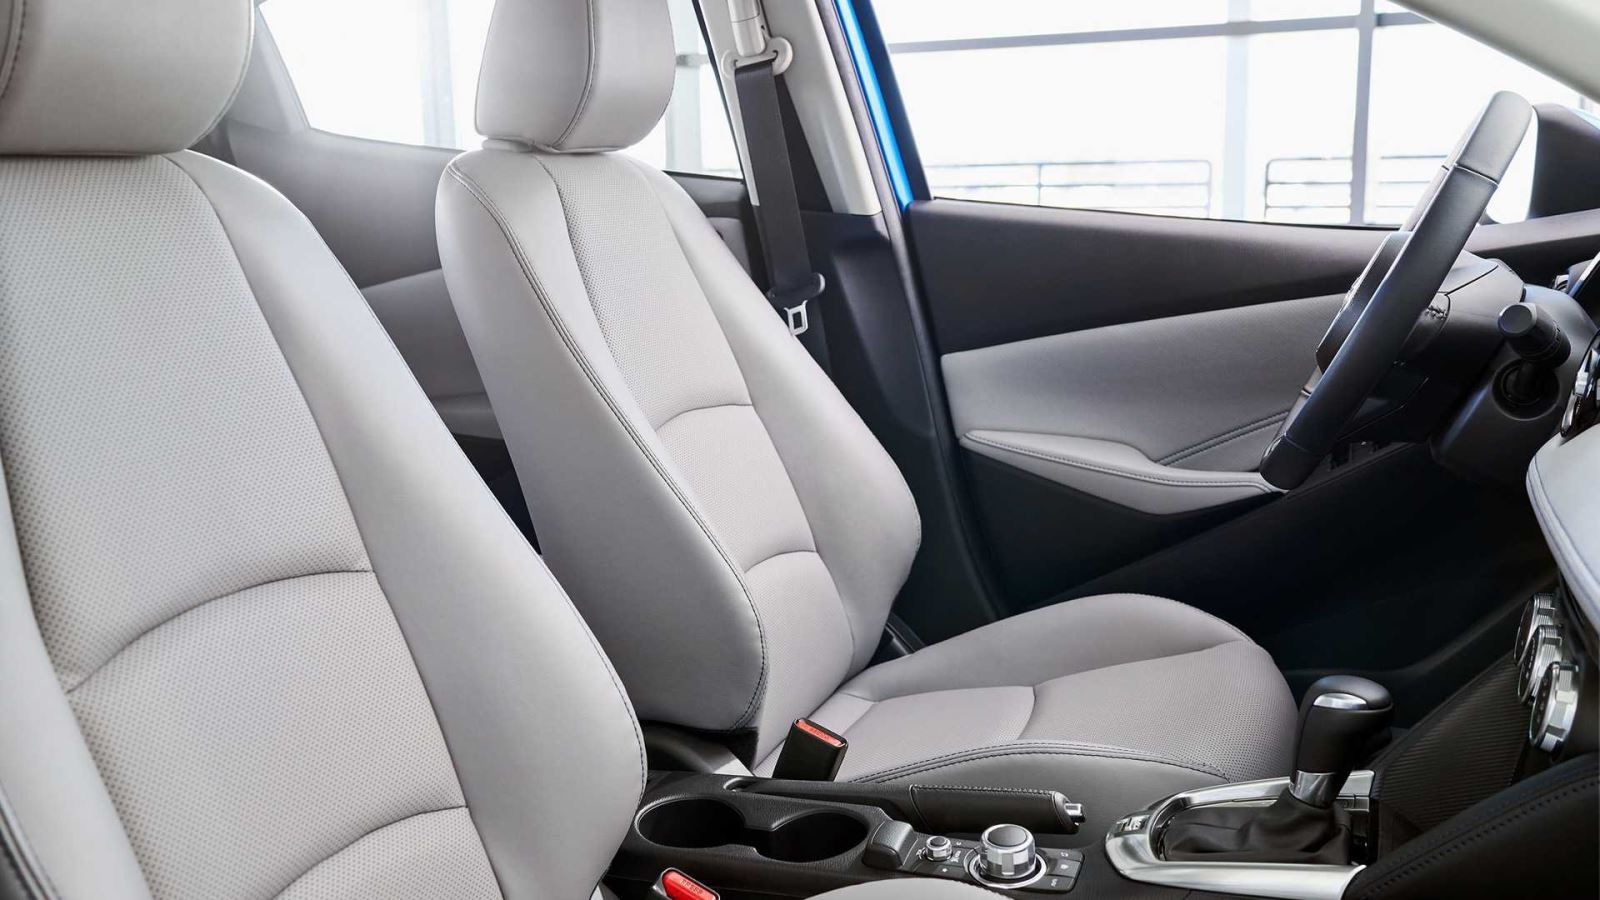 Toyota Yaris Hatchback 2020 sử dụng khung gầm Mazda2 chuẩn bị trình làng để đấu Honda Jazz 4